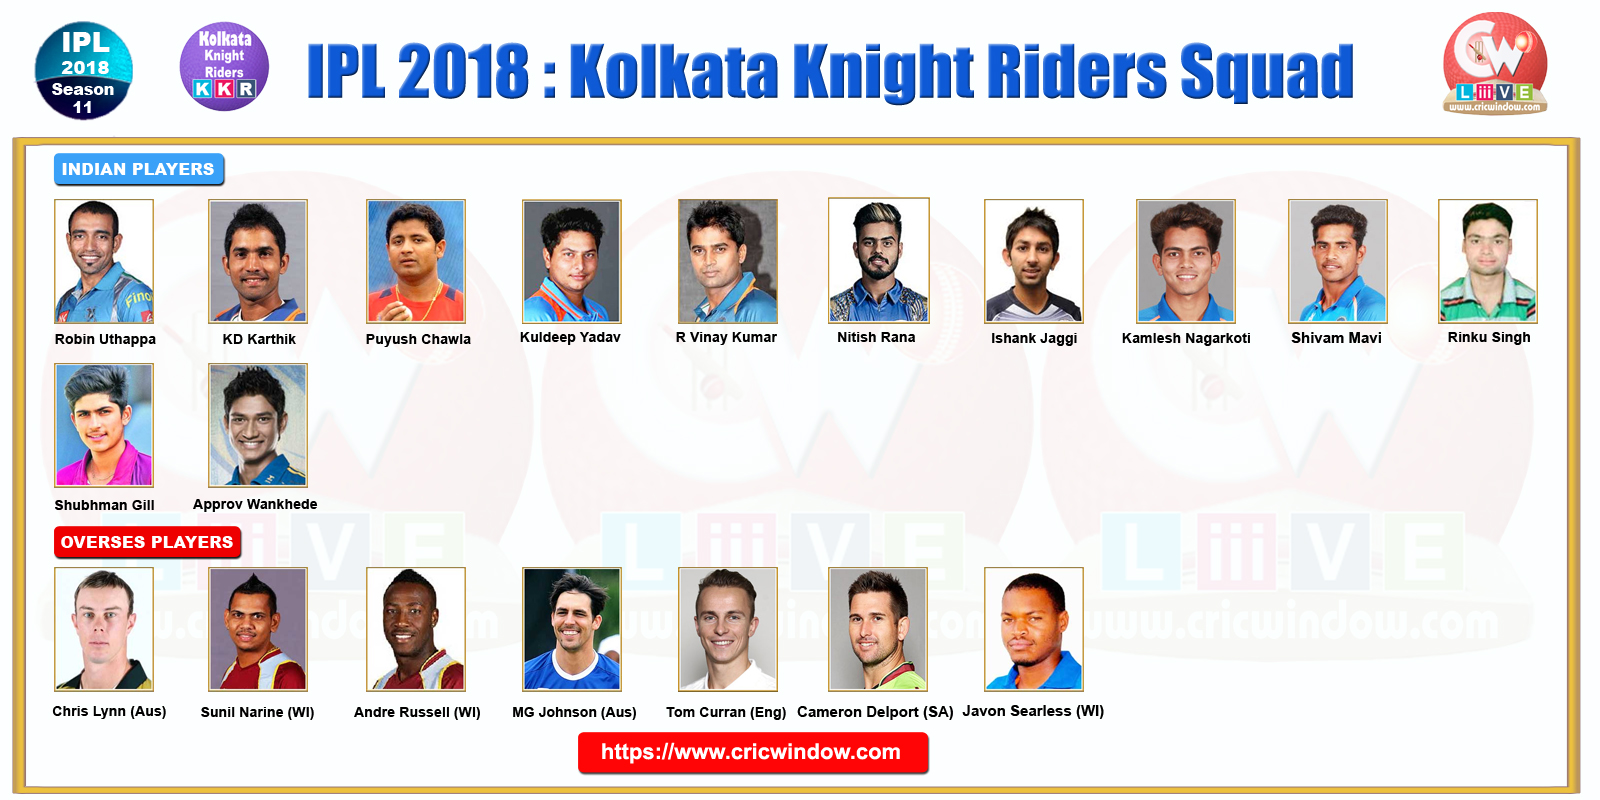 Kolkata Knight Riders team 2018